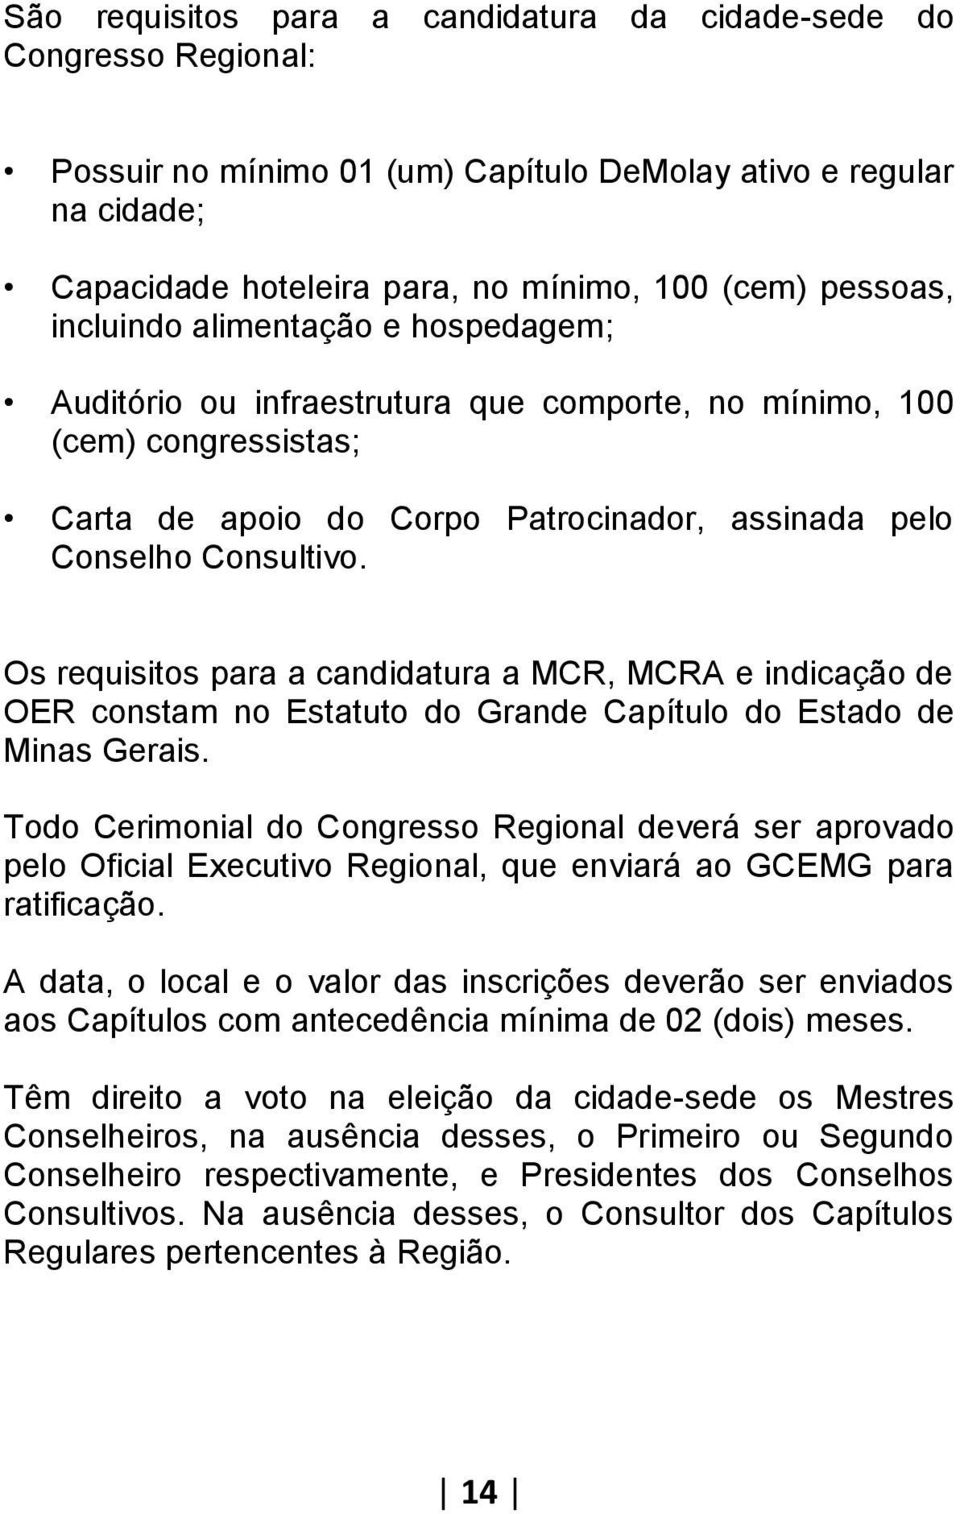 Os requisitos para a candidatura a MCR, MCRA e indicação de OER constam no Estatuto do Grande Capítulo do Estado de Minas Gerais.